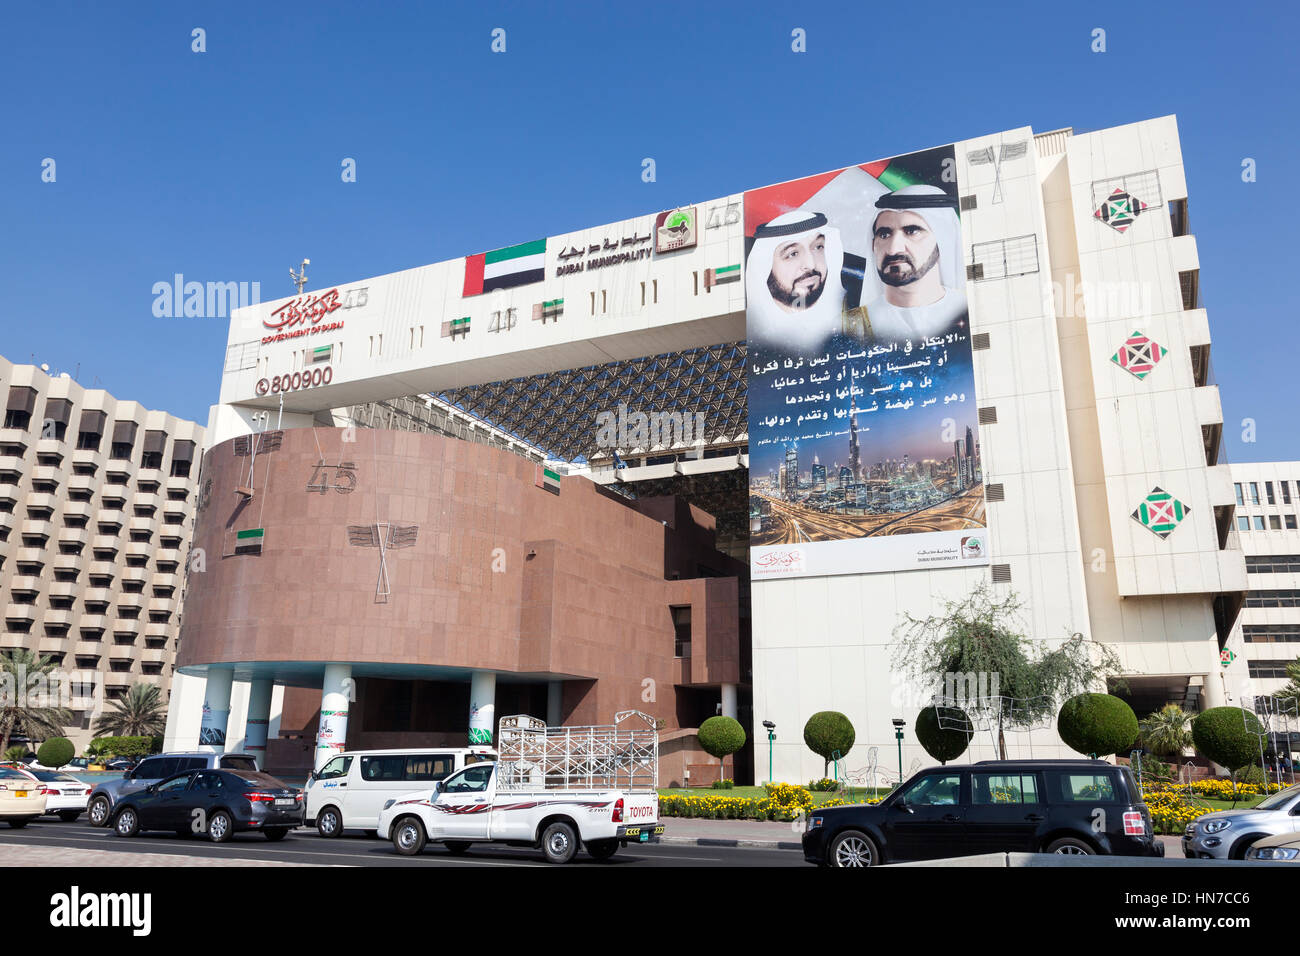 Dubaï, Émirats arabes unis - DEC 6, 2016 : vue extérieure de la municipalité de Dubai Deira en construction. Dubaï, Émirats Arabes Unis Banque D'Images